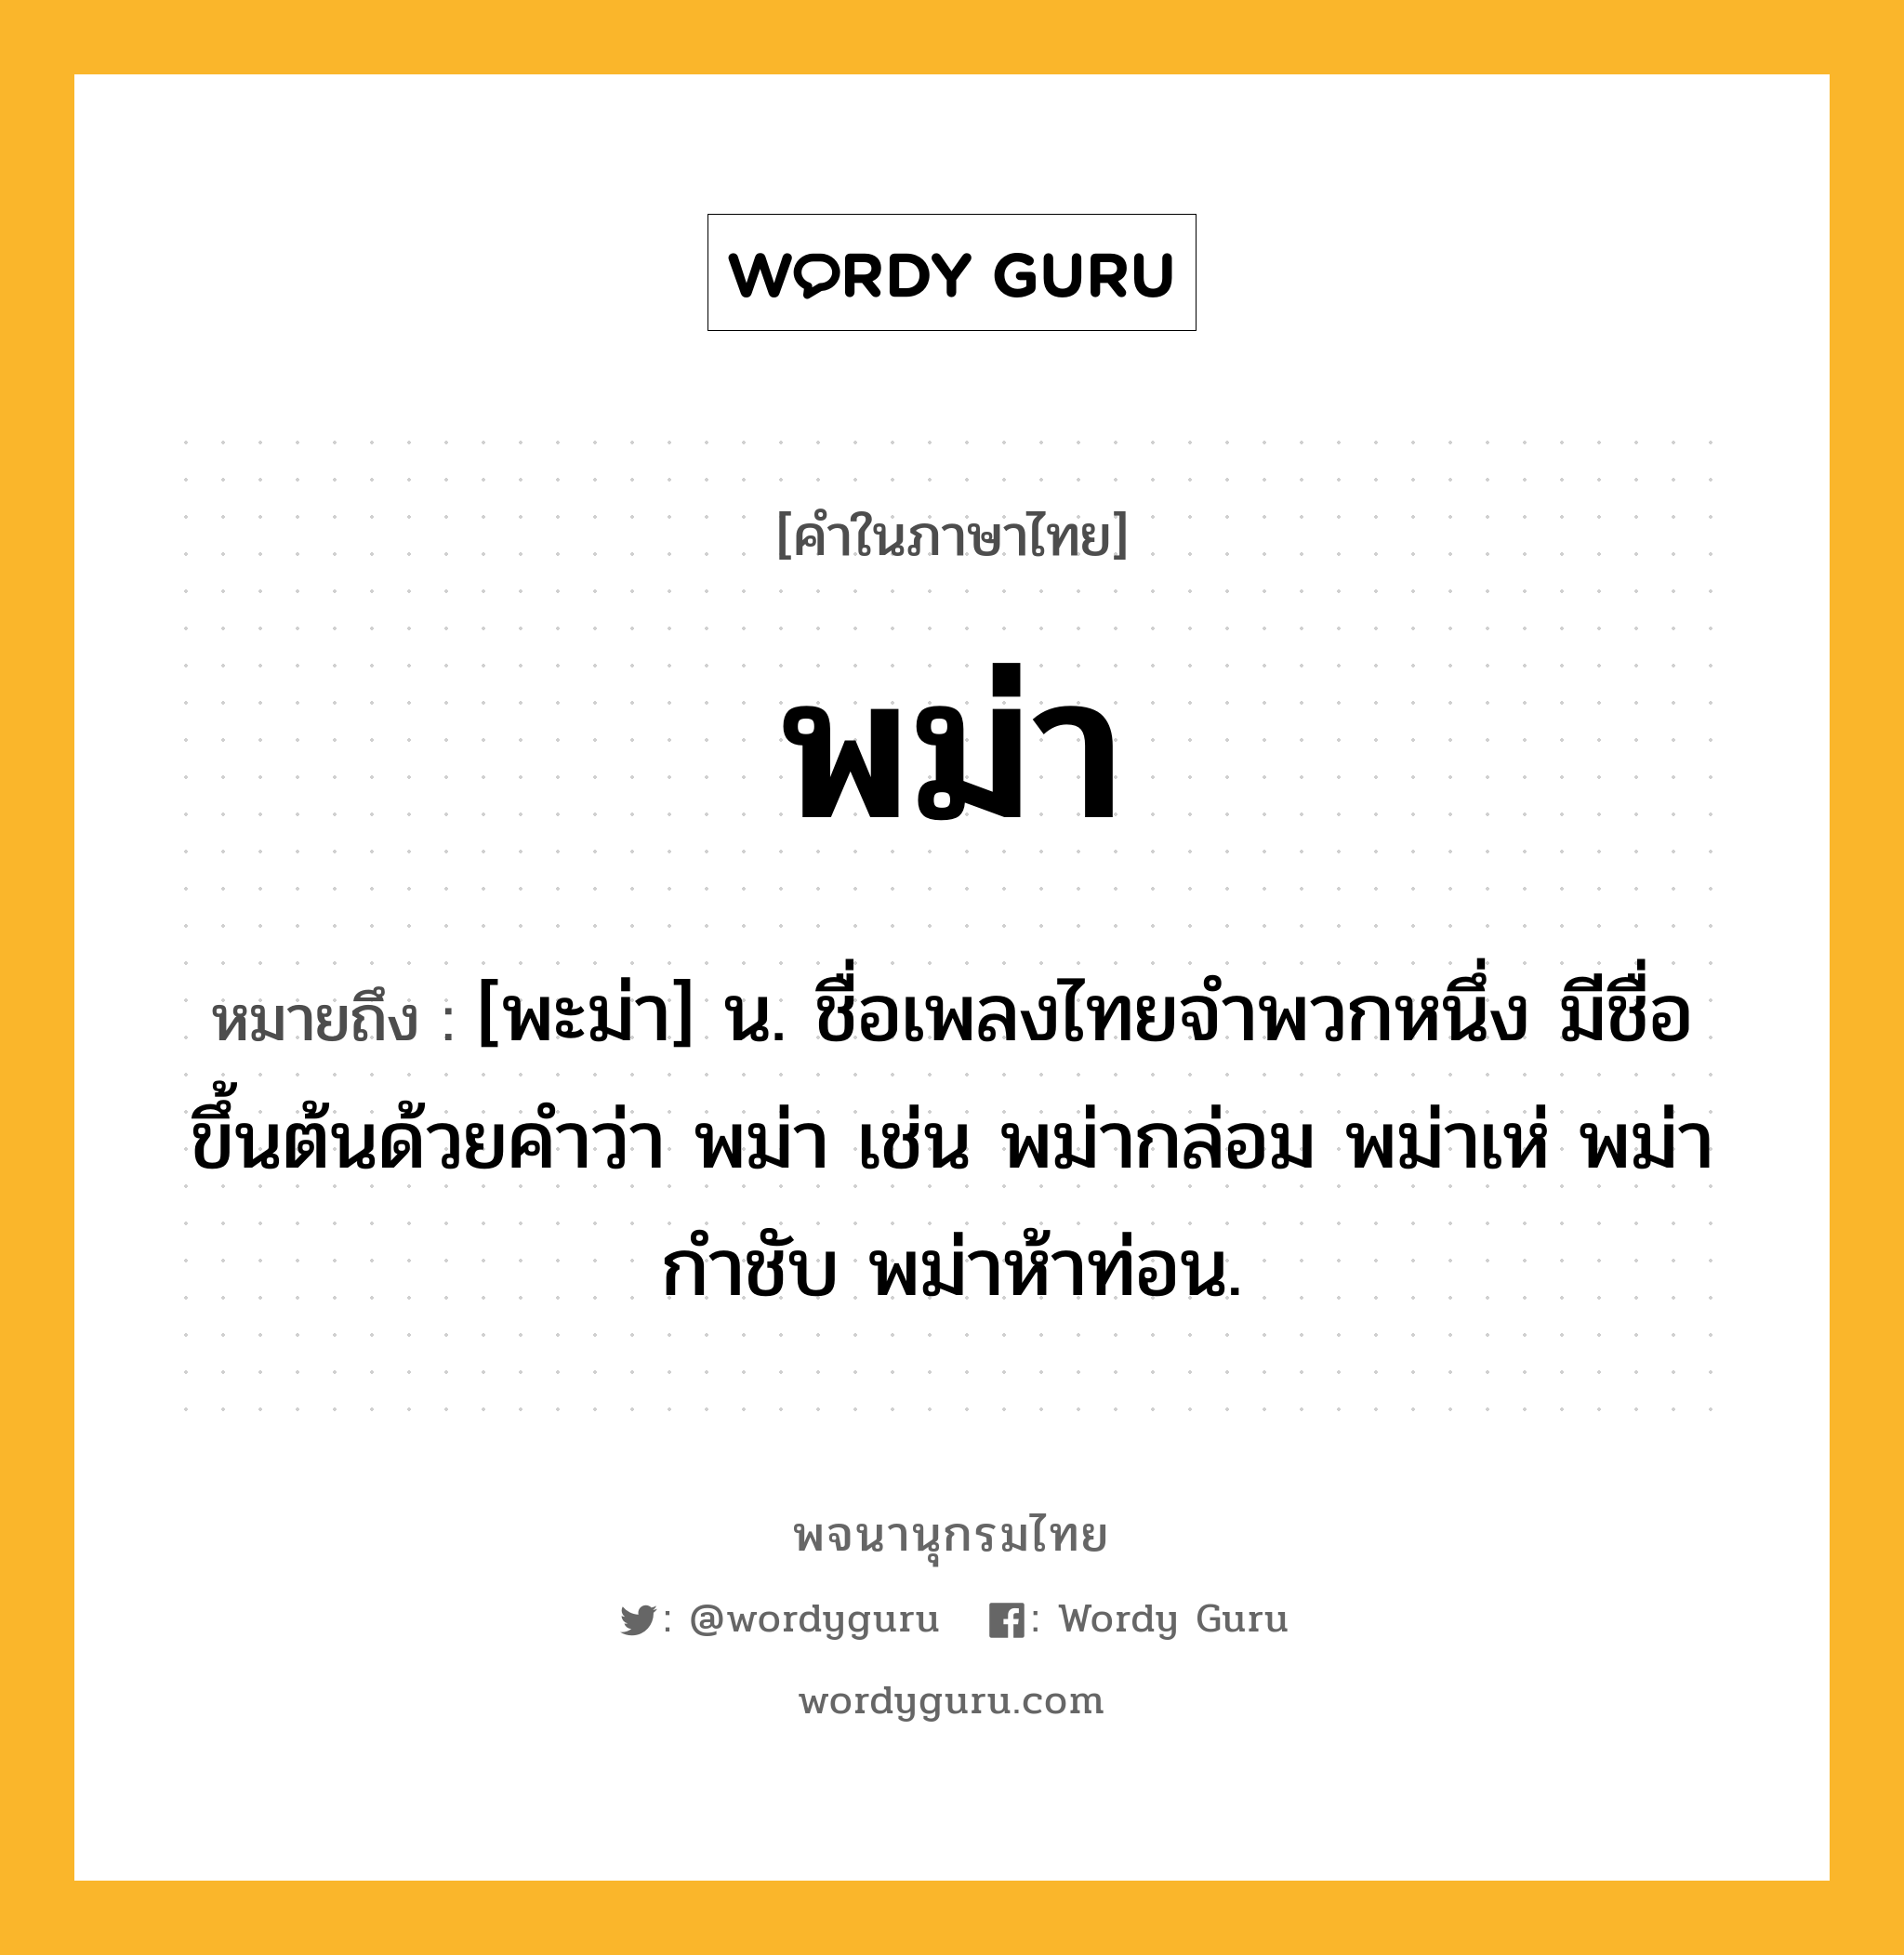 พม่า ความหมาย หมายถึงอะไร?, คำในภาษาไทย พม่า หมายถึง [พะม่า] น. ชื่อเพลงไทยจําพวกหนึ่ง มีชื่อขึ้นต้นด้วยคําว่า พม่า เช่น พม่ากล่อม พม่าเห่ พม่ากําชับ พม่าห้าท่อน.